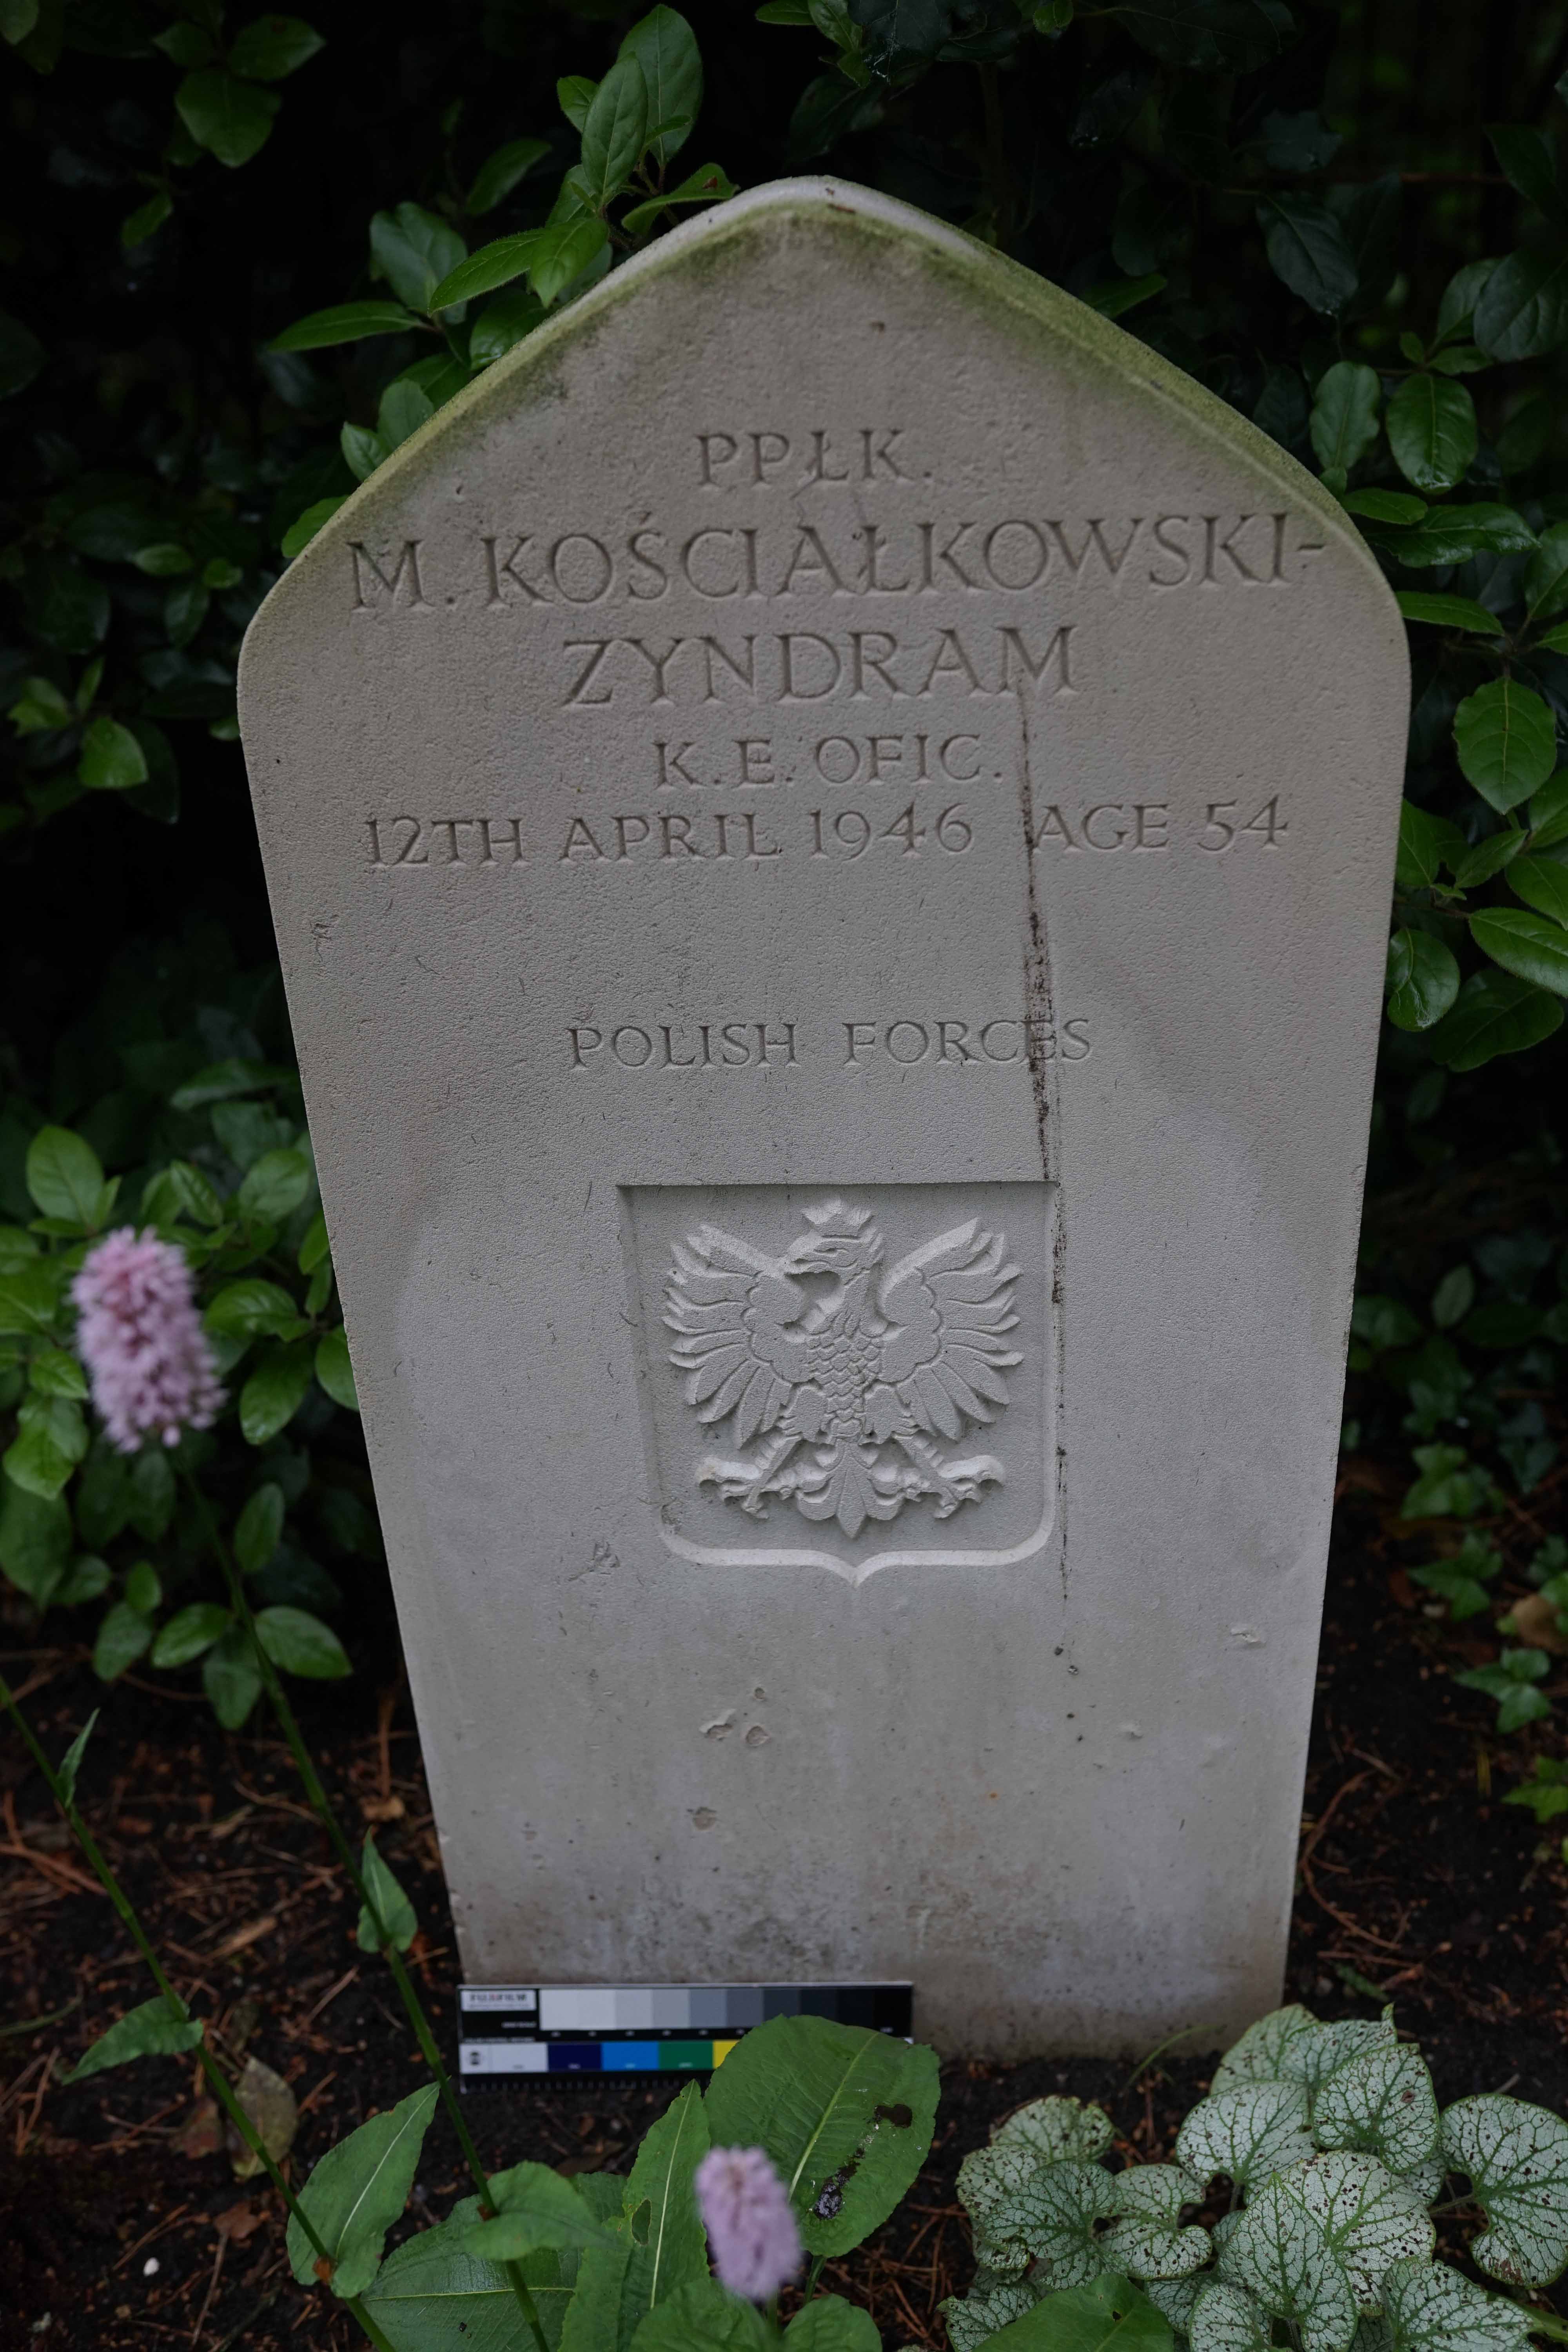 Tombstone of Marian Zyndram-Kościałkowski